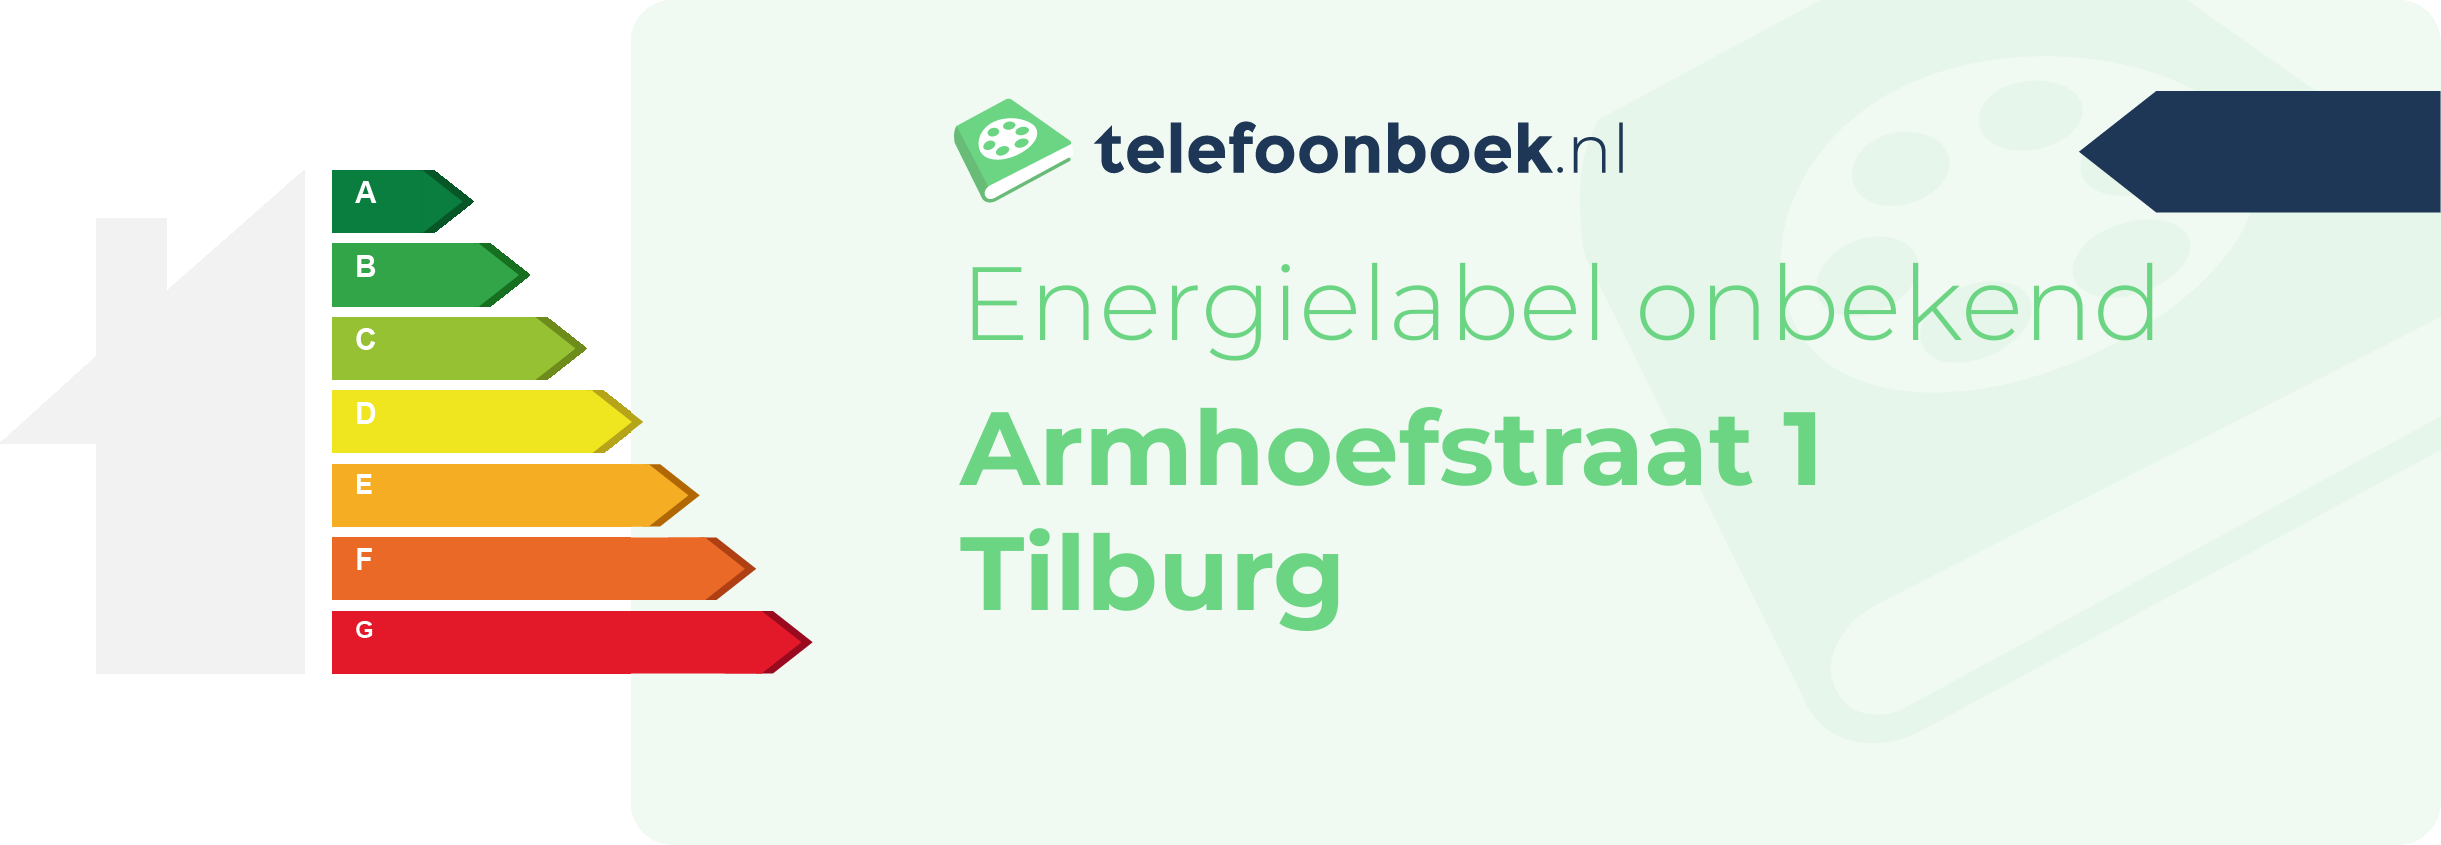 Energielabel Armhoefstraat 1 Tilburg